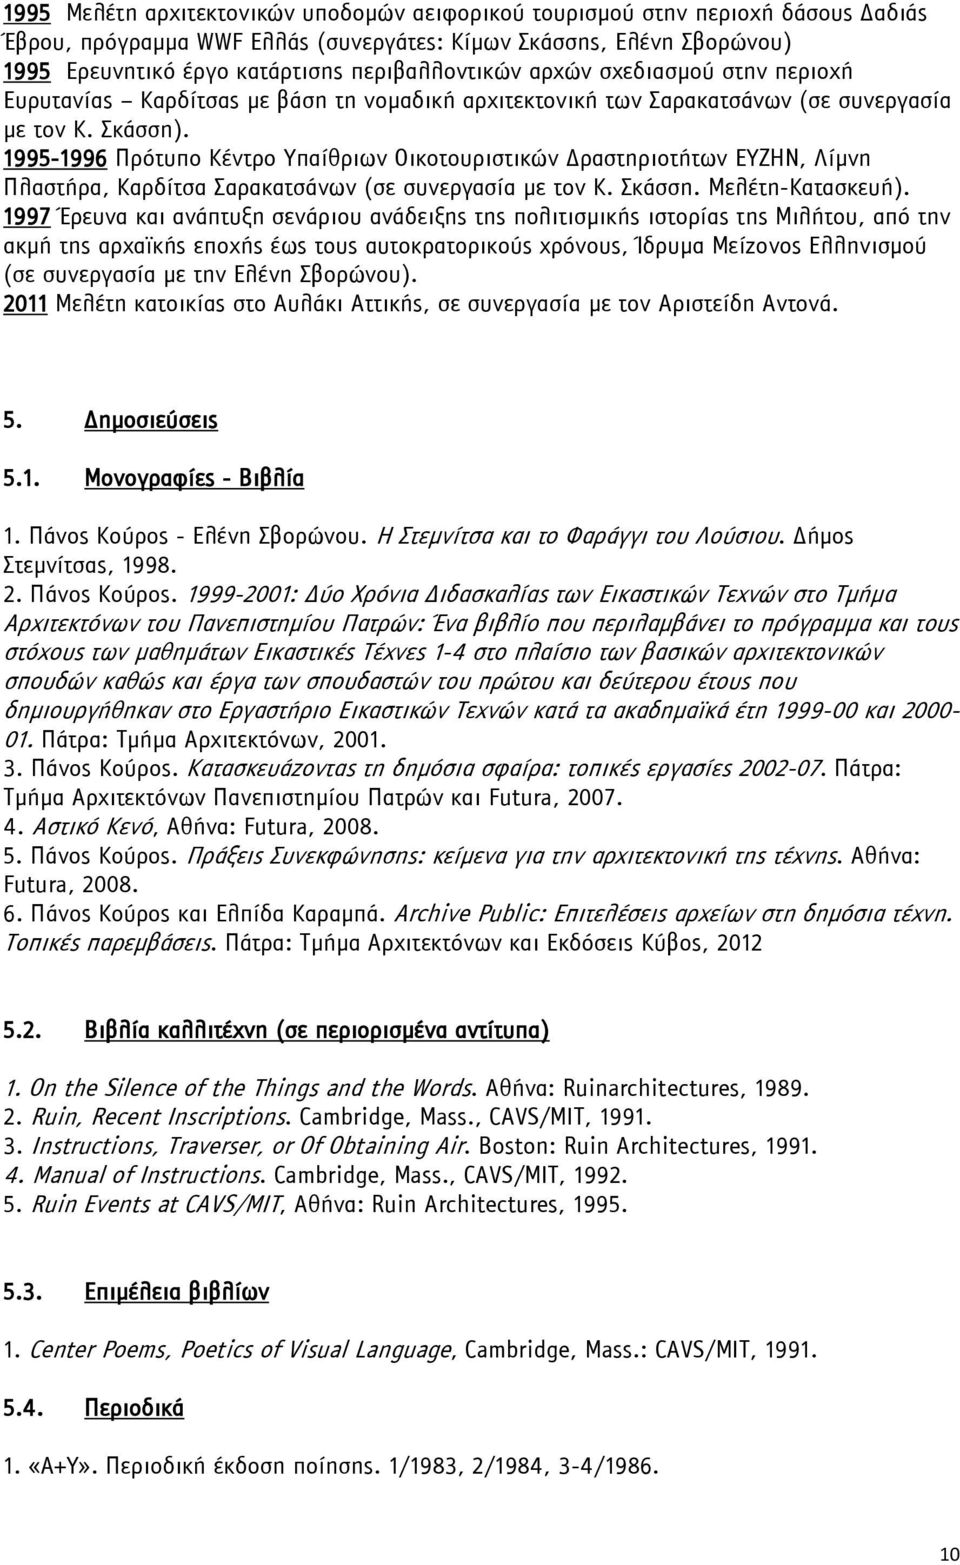 1995-1996 Πρότυπο Κέντρο Υπαίθριων Οικοτουριστικών Δραστηριοτήτων ΕΥΖΗΝ, Λίμνη Πλαστήρα, Καρδίτσα Σαρακατσάνων (σε συνεργασία με τον Κ. Σκάσση. Μελέτη-Κατασκευή).